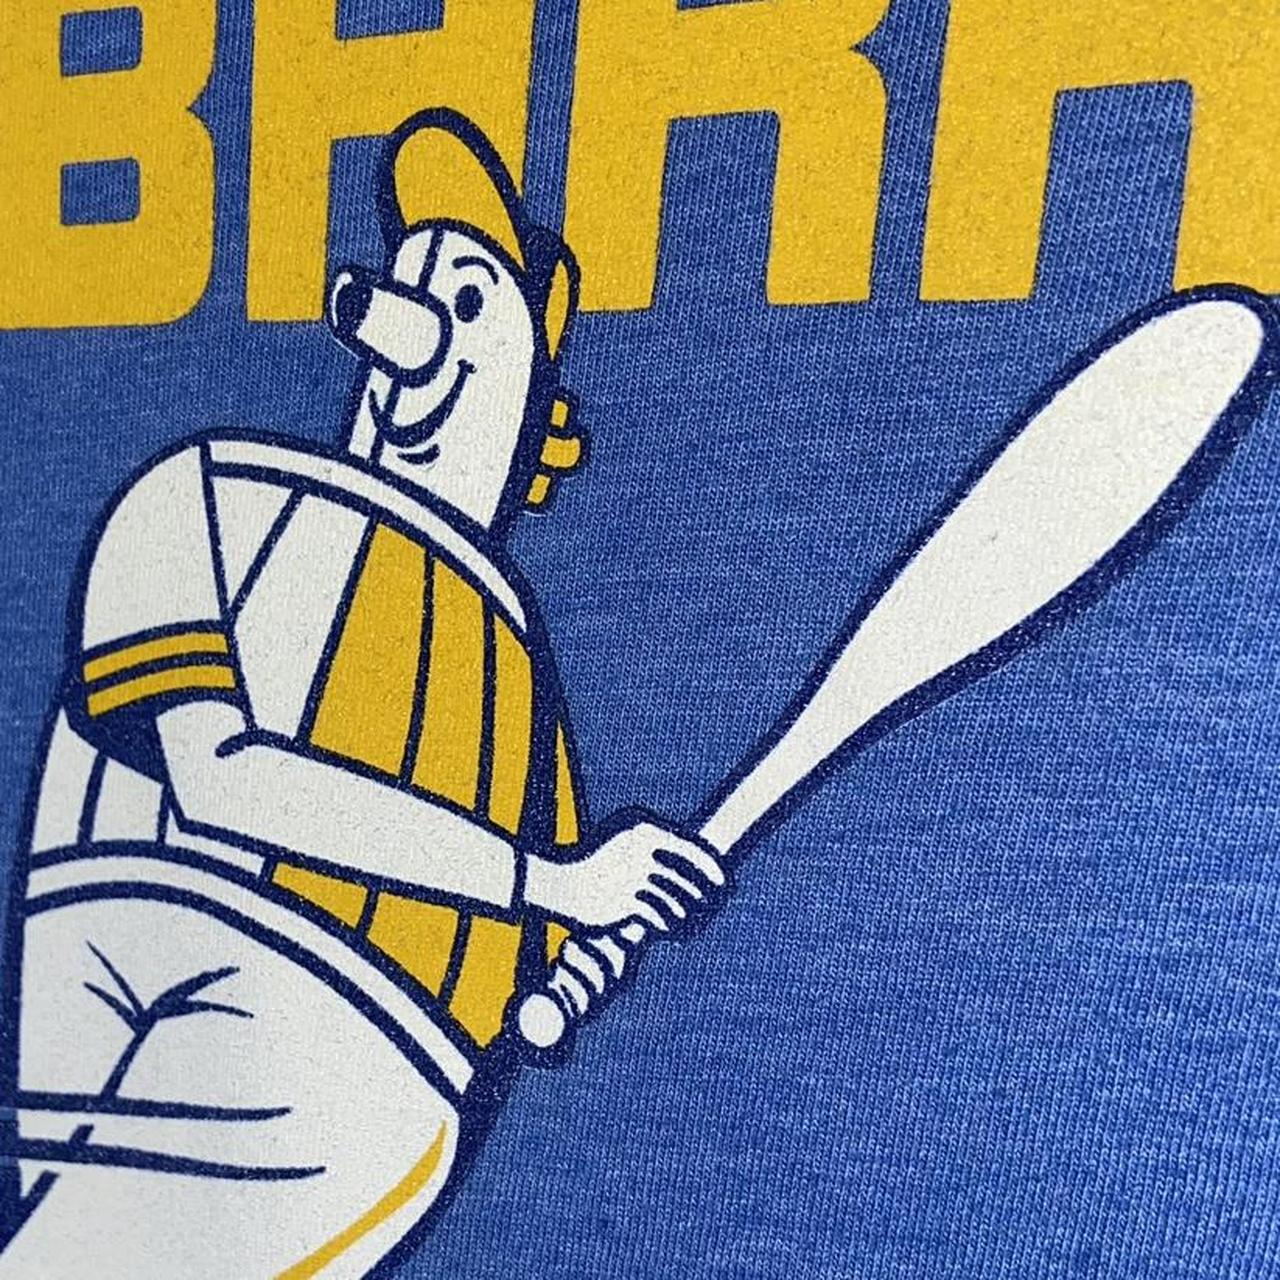 Milwaukee Brewers barrelman Logo T-Shirt